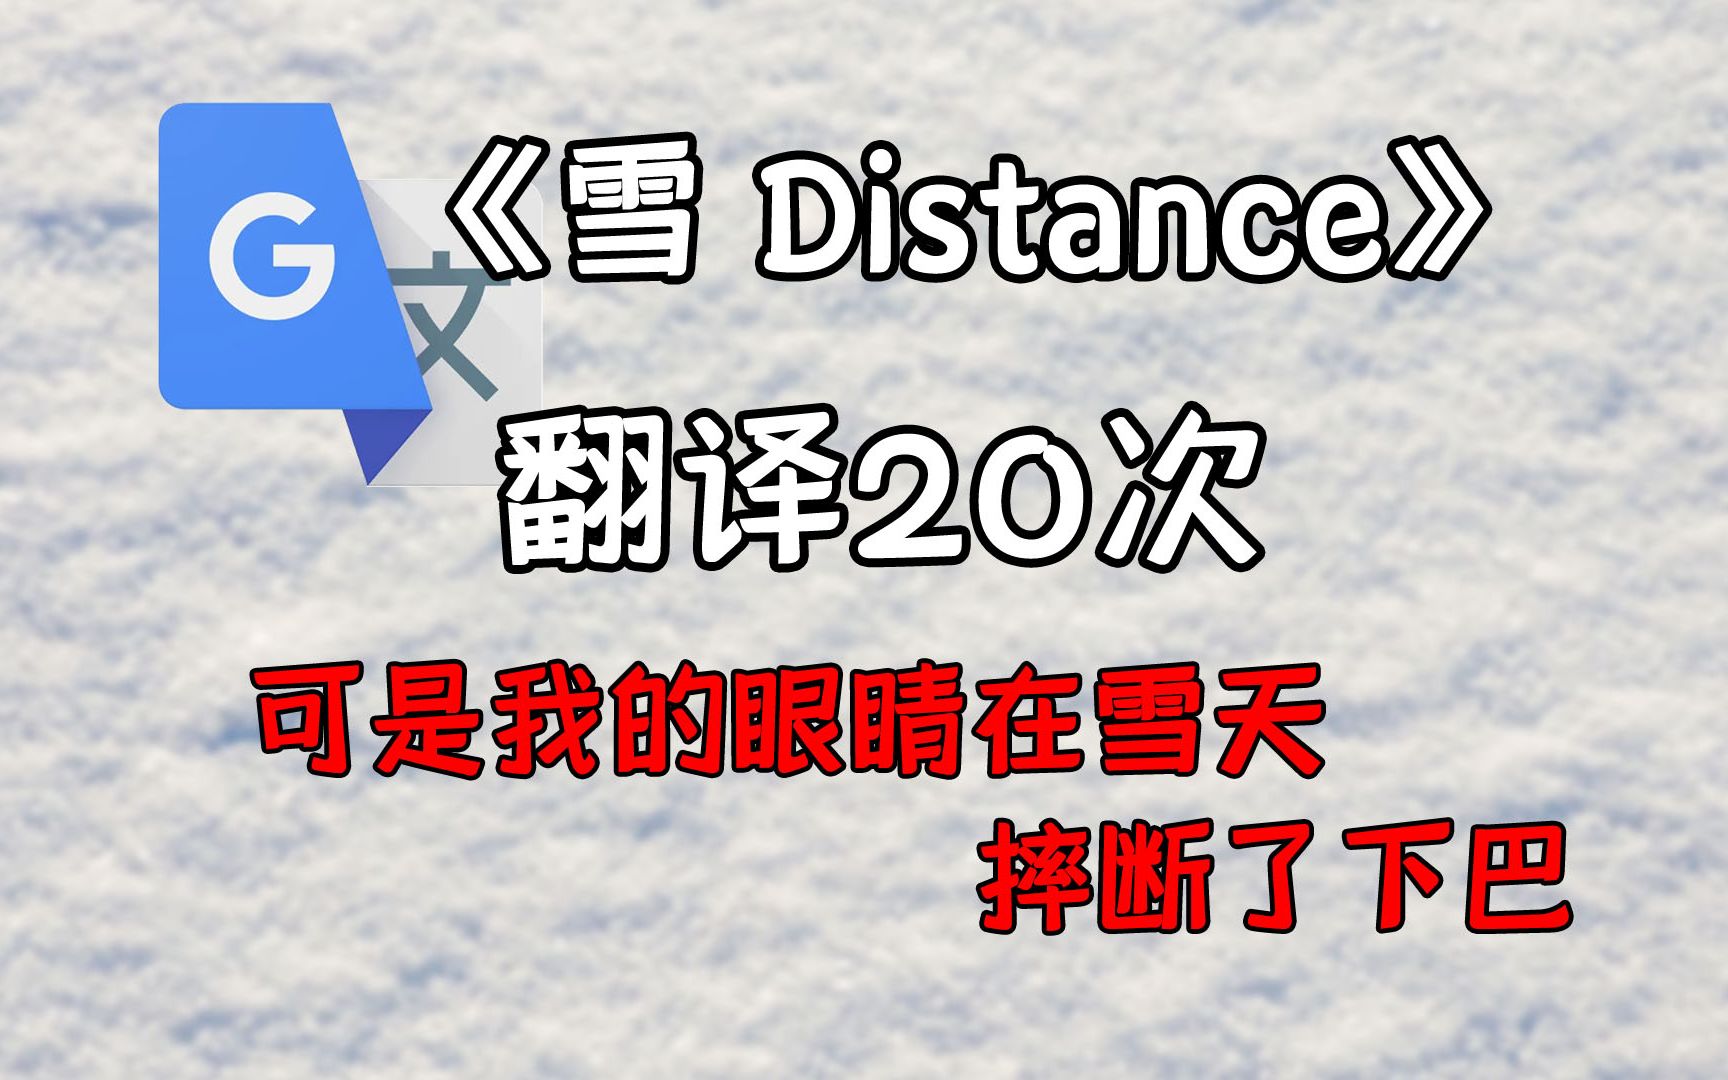 《雪 Distance》，但是谷歌翻译20次